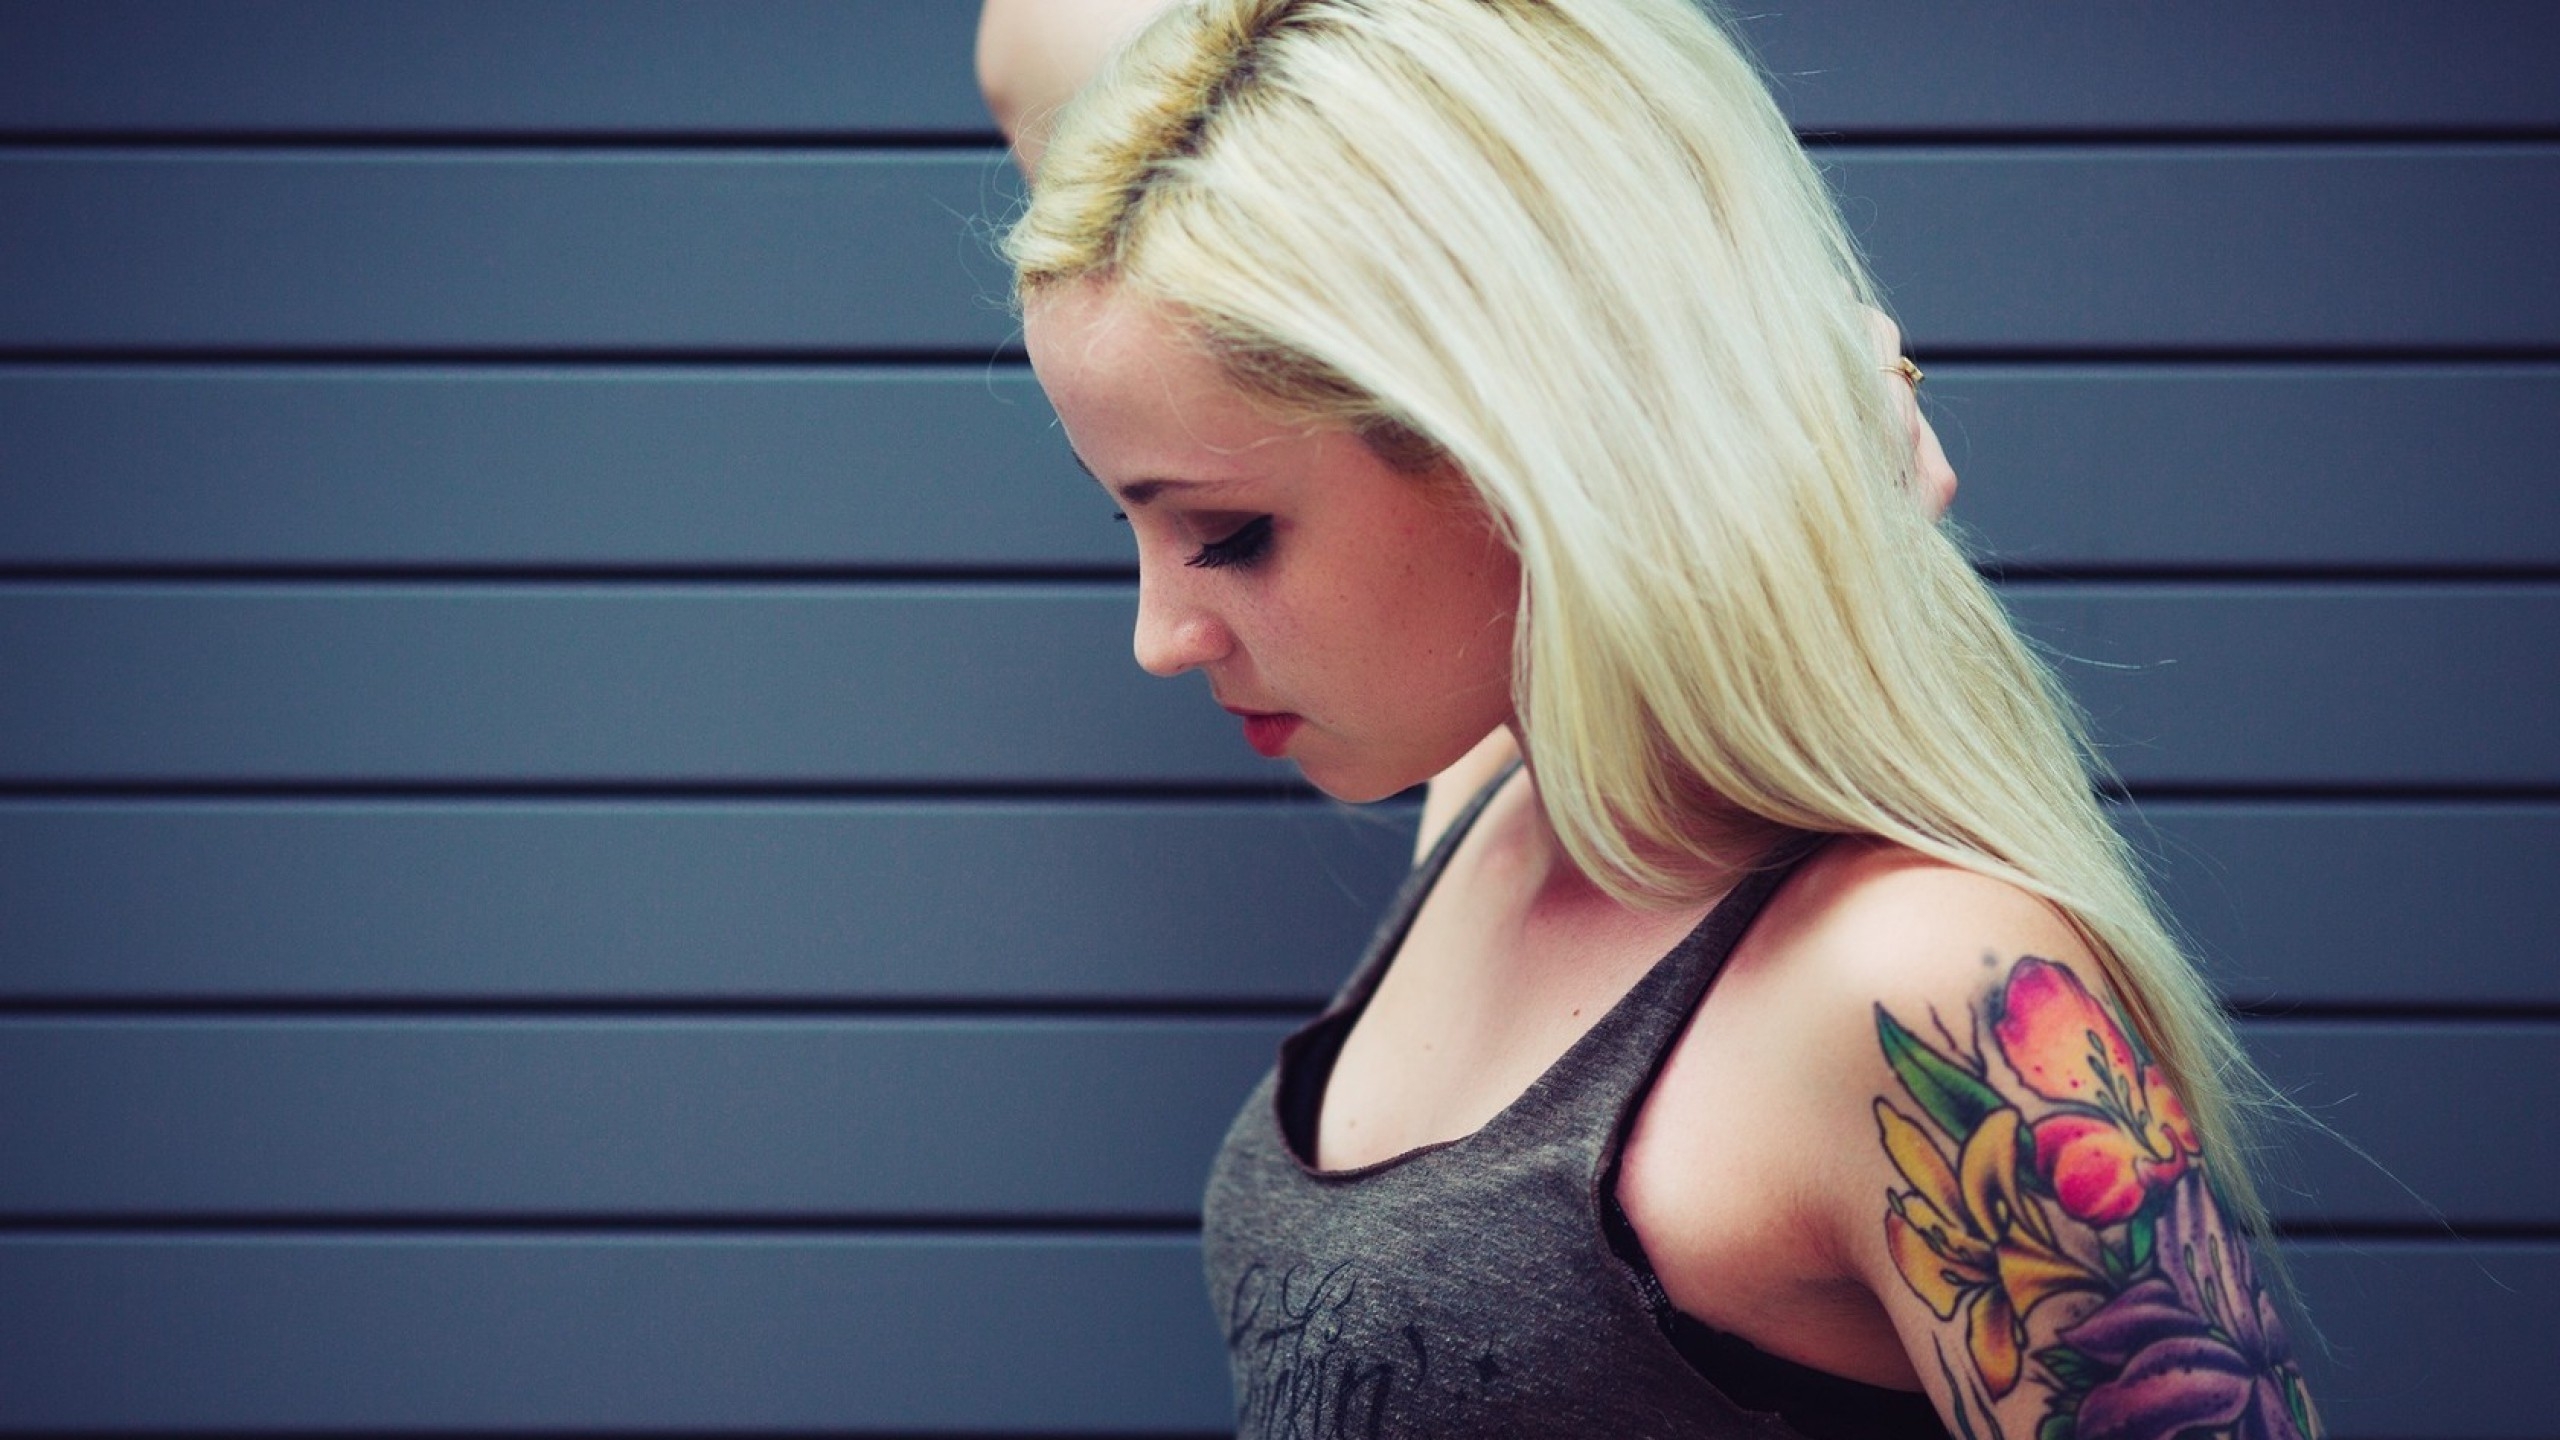 Светловолосая девушка с татуировкой на руке · бесплатная фотография